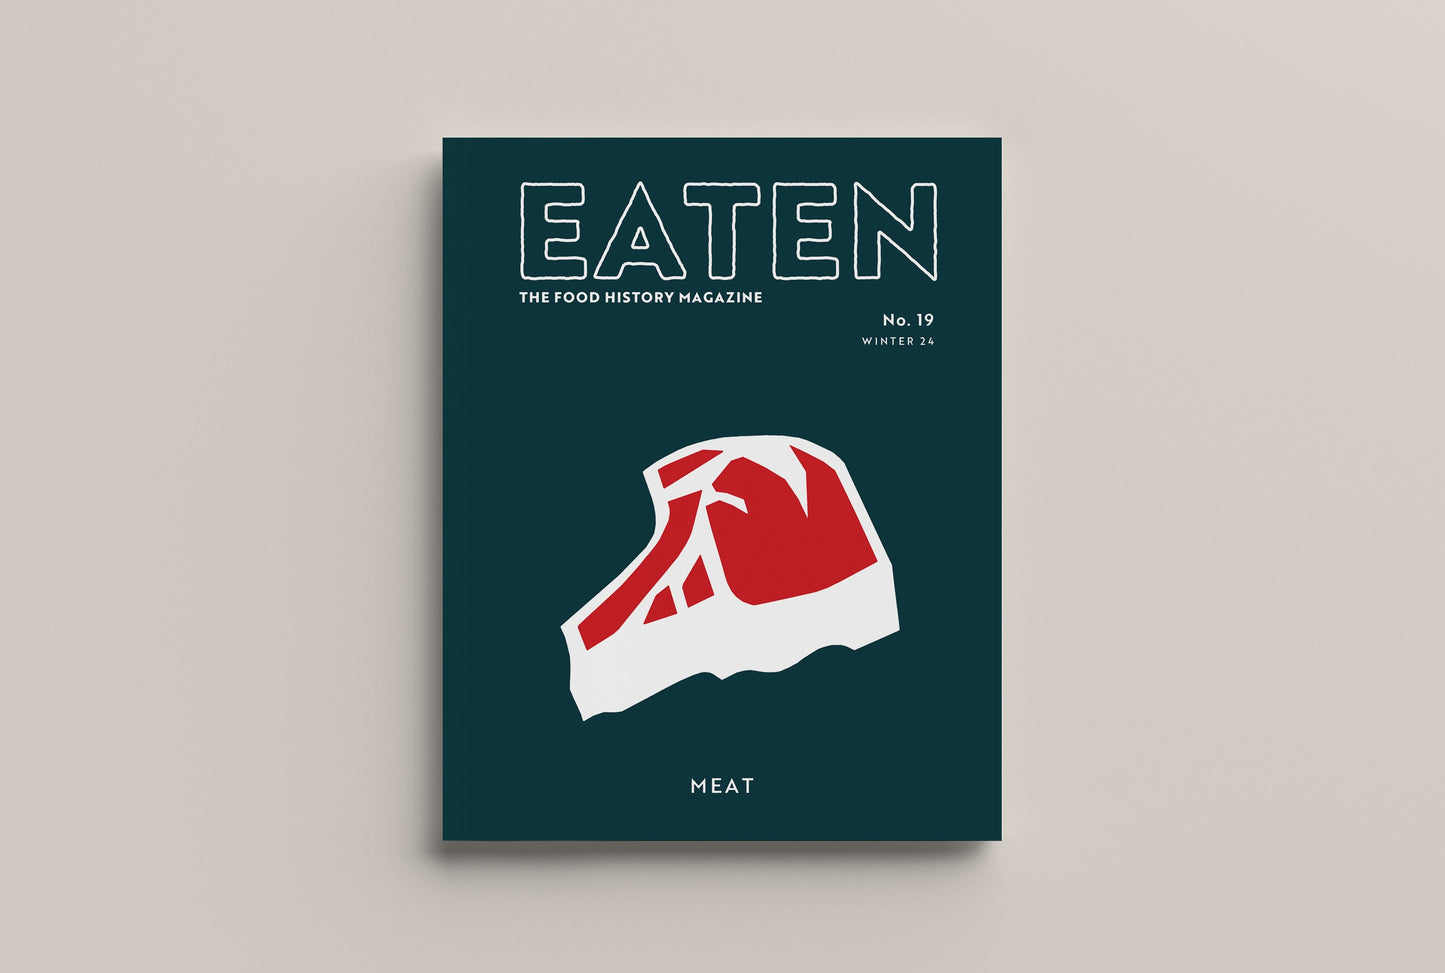 Eaten #19 Meat PRE ORDER